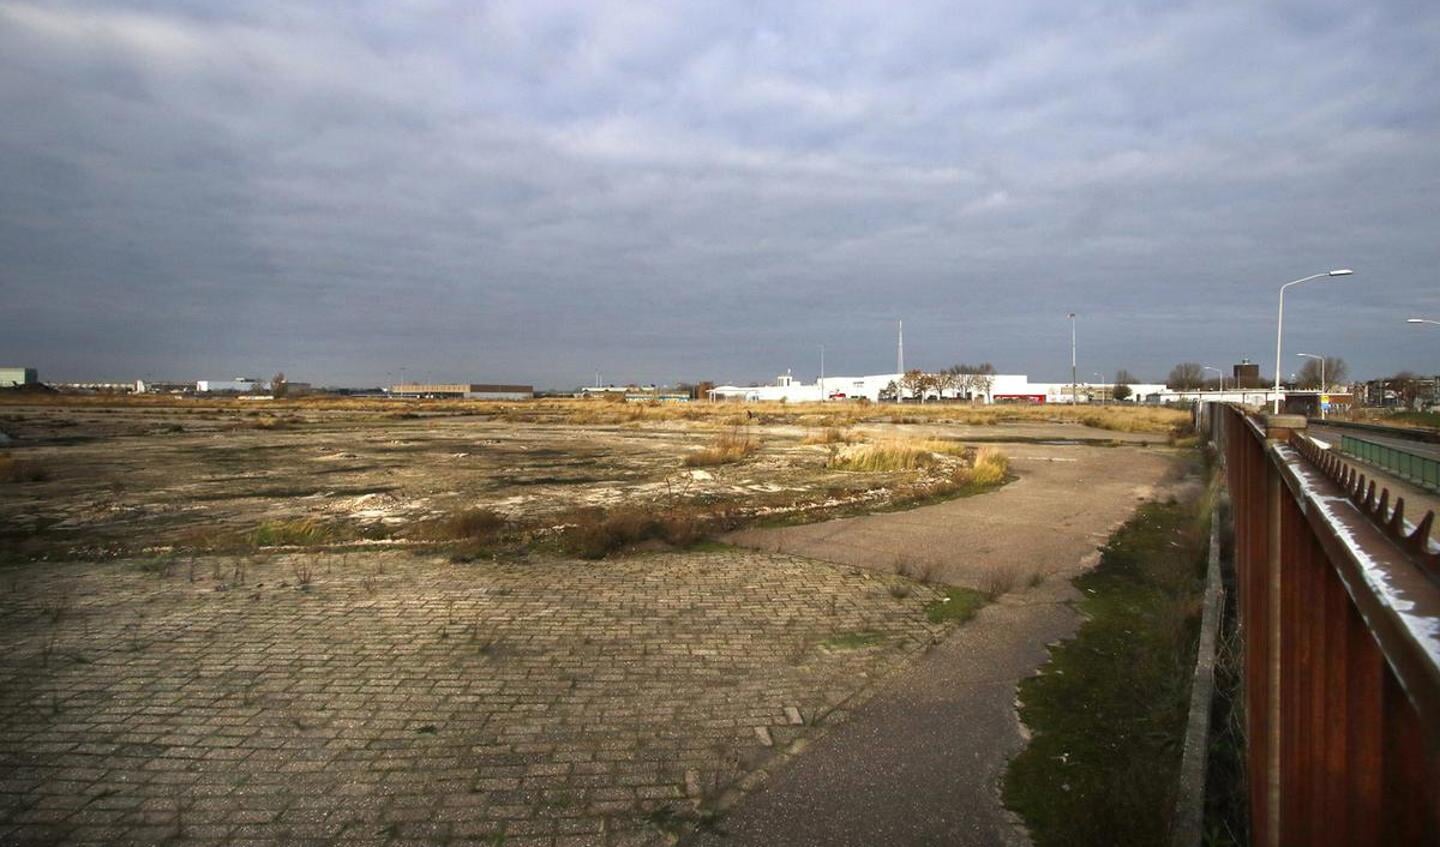 Het terrein van de voormalige suikerfabriek van CSM aan de Markkade. Sinds de sloop in 2009 ligt het terrein braak.